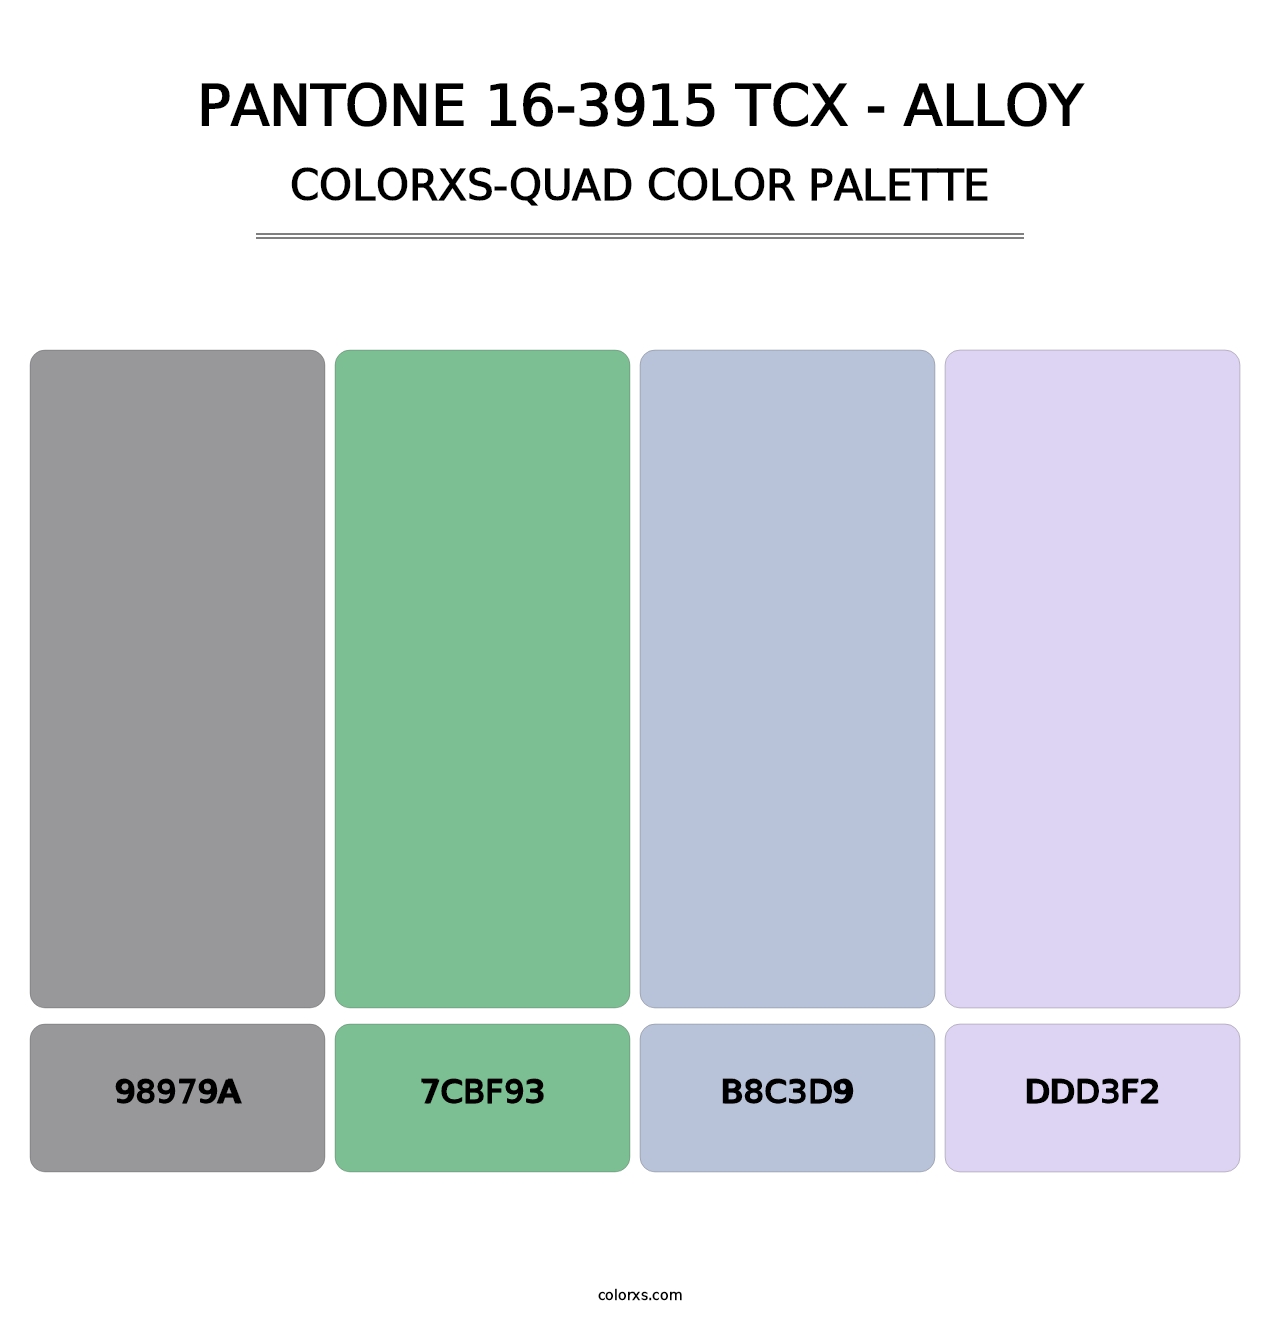 PANTONE 16-3915 TCX - Alloy - Colorxs Quad Palette